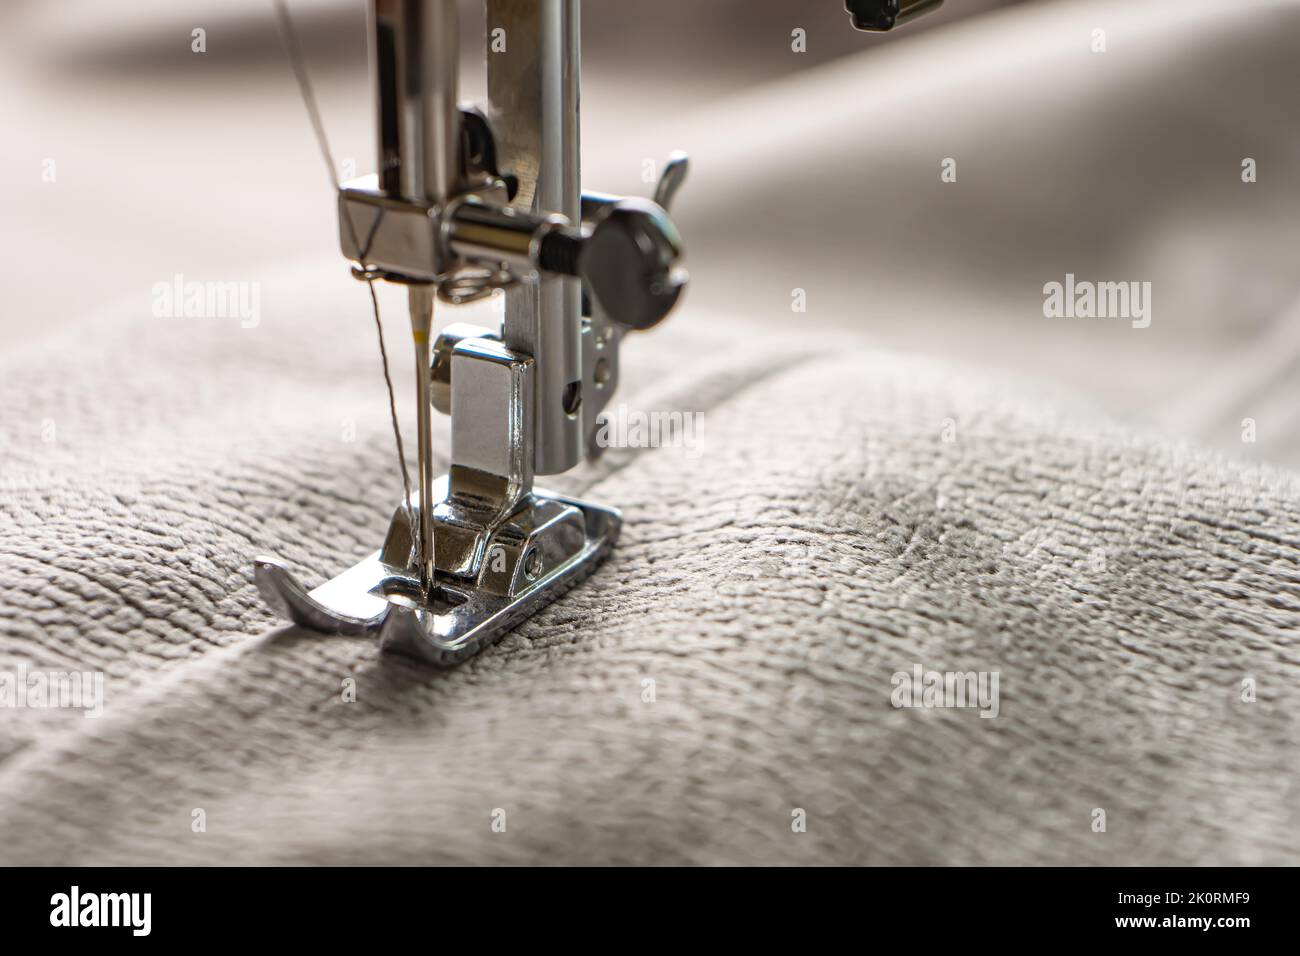 Machine à coudre moderne presser le pied avec tissu et fil gris, gros plan, espace de copie. Processus de couture vêtements, rideaux, tissus d'ameublement. Affaires, loisirs, ha Banque D'Images